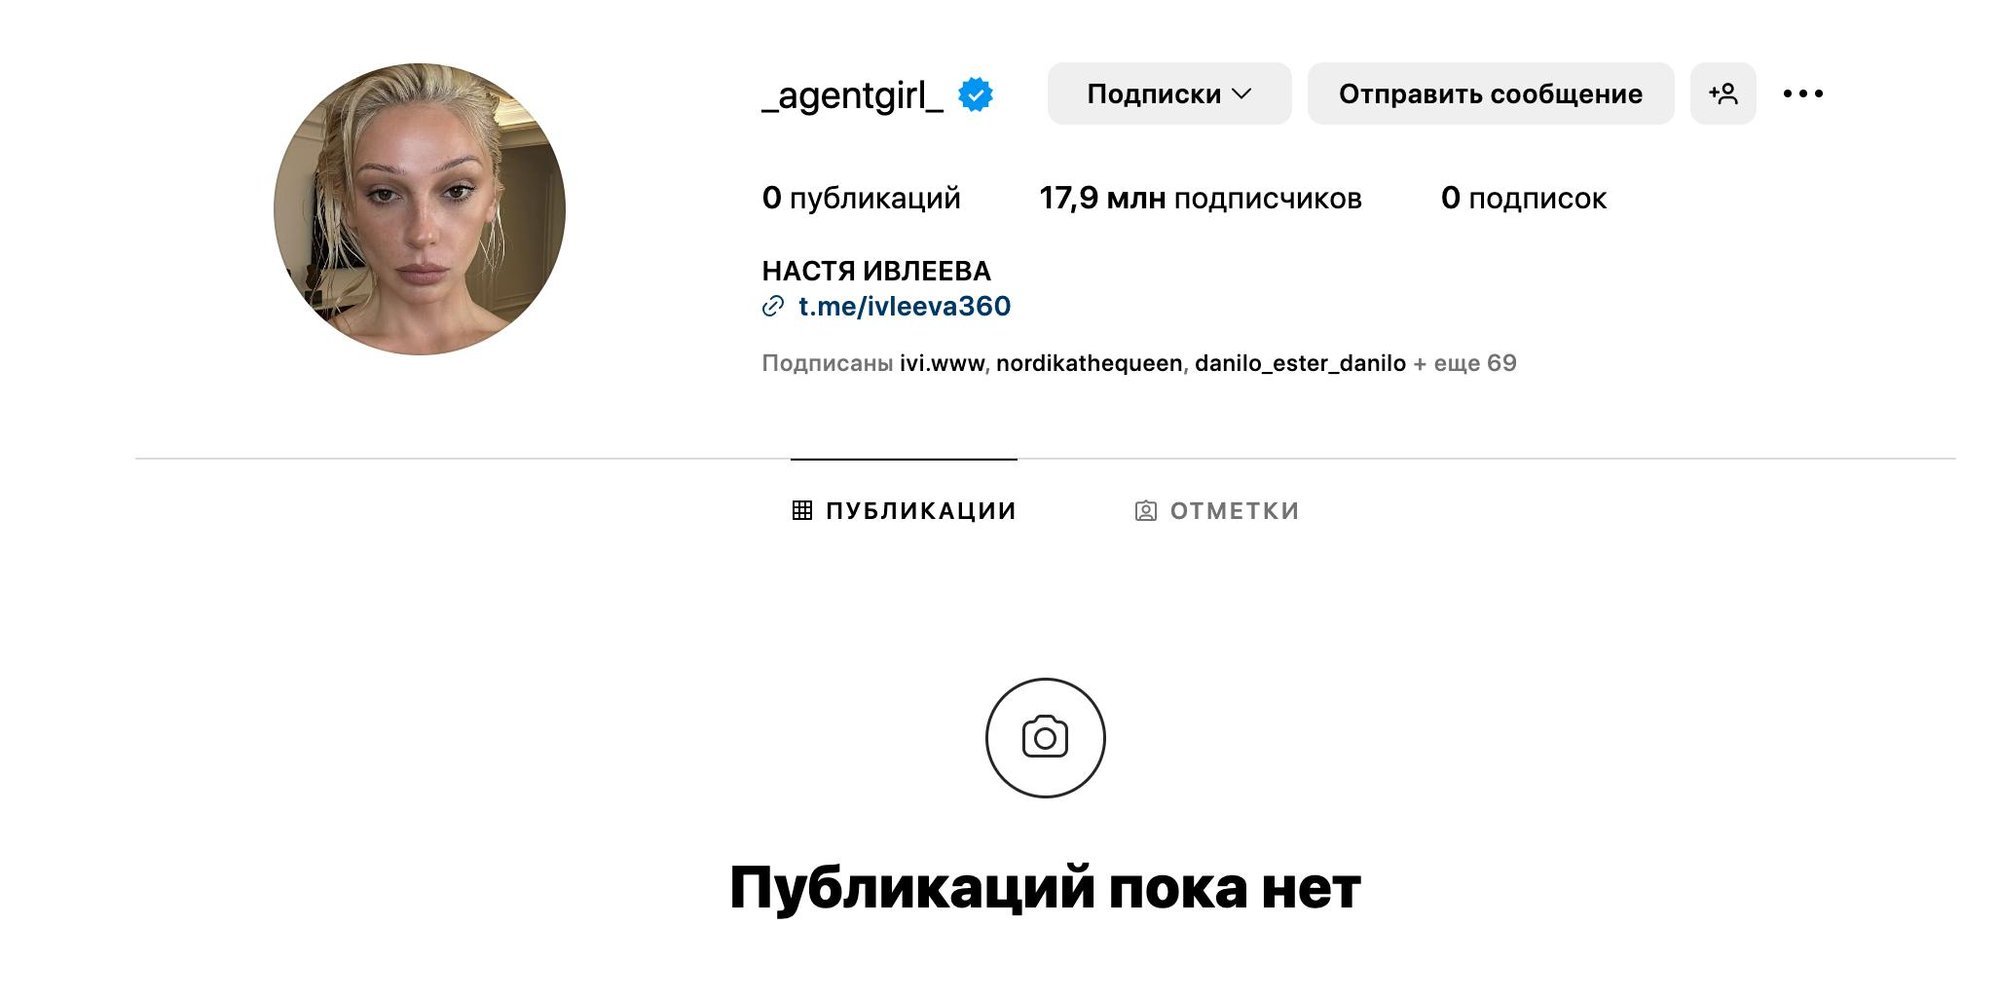 Пустой аккаунт: Настя Ивлеева удалила весь контент в своем Инстаграме